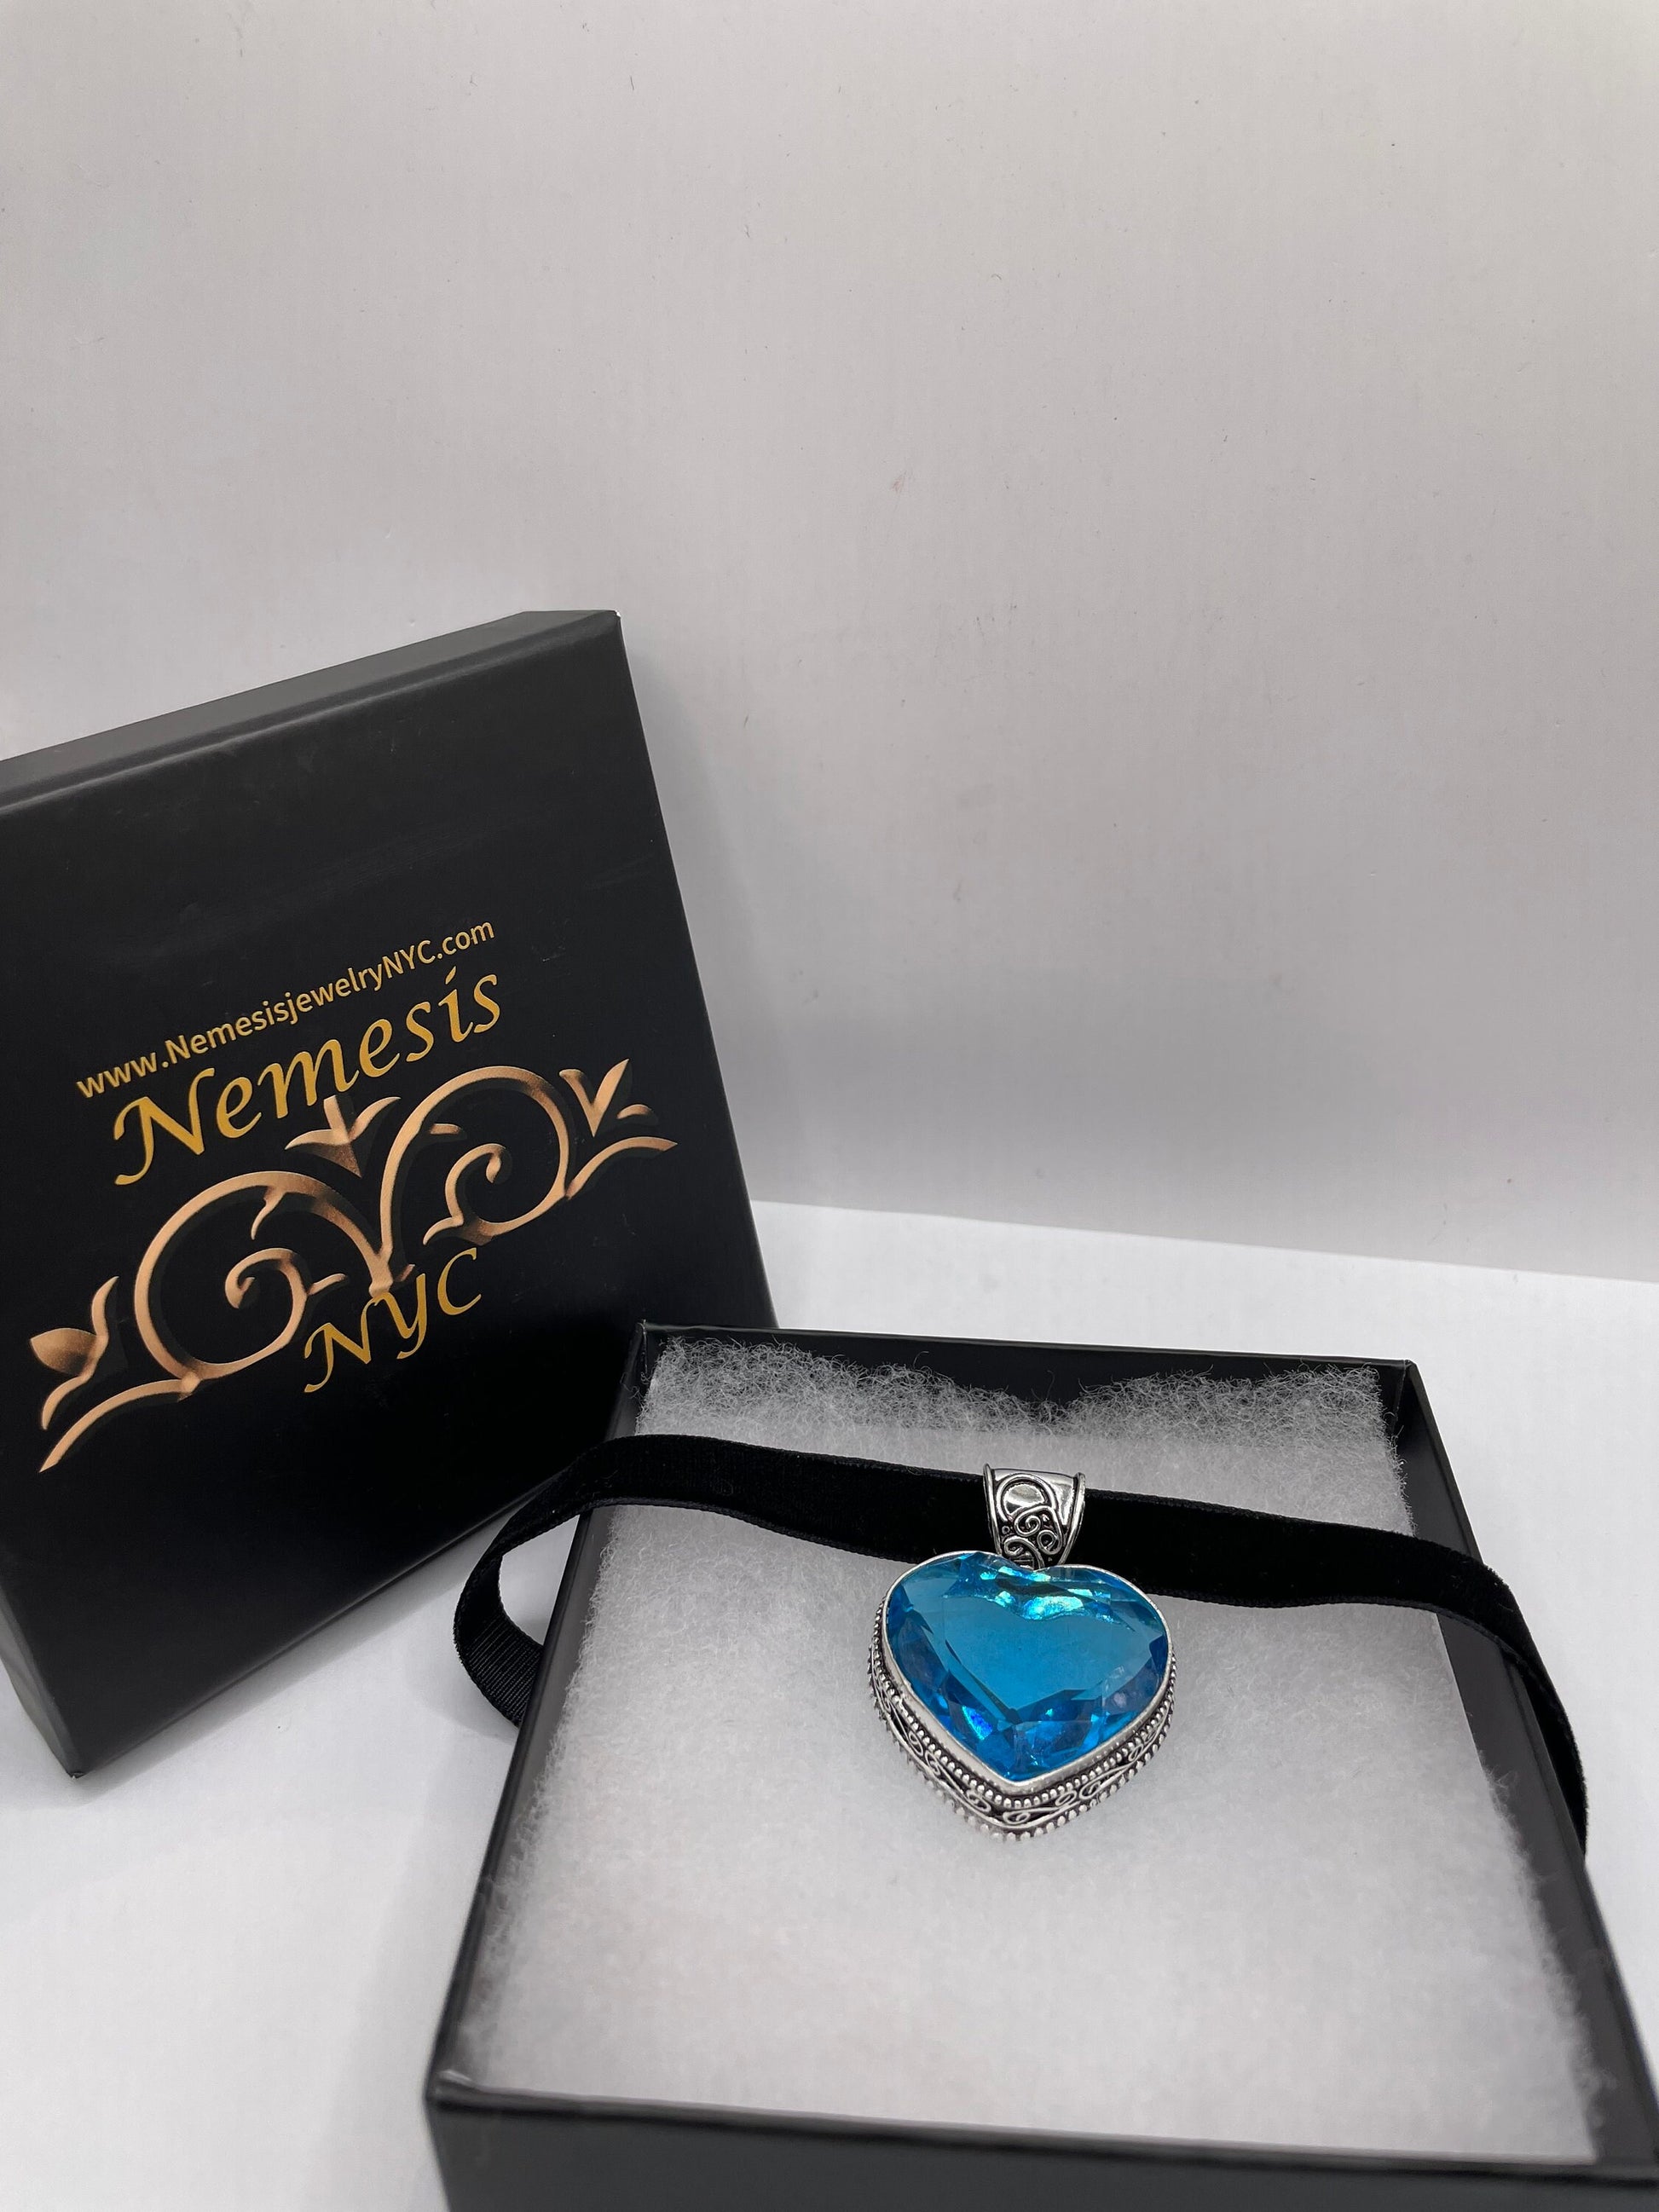 Vintage Heart Antique Aqua Blue Glass Choker Necklace